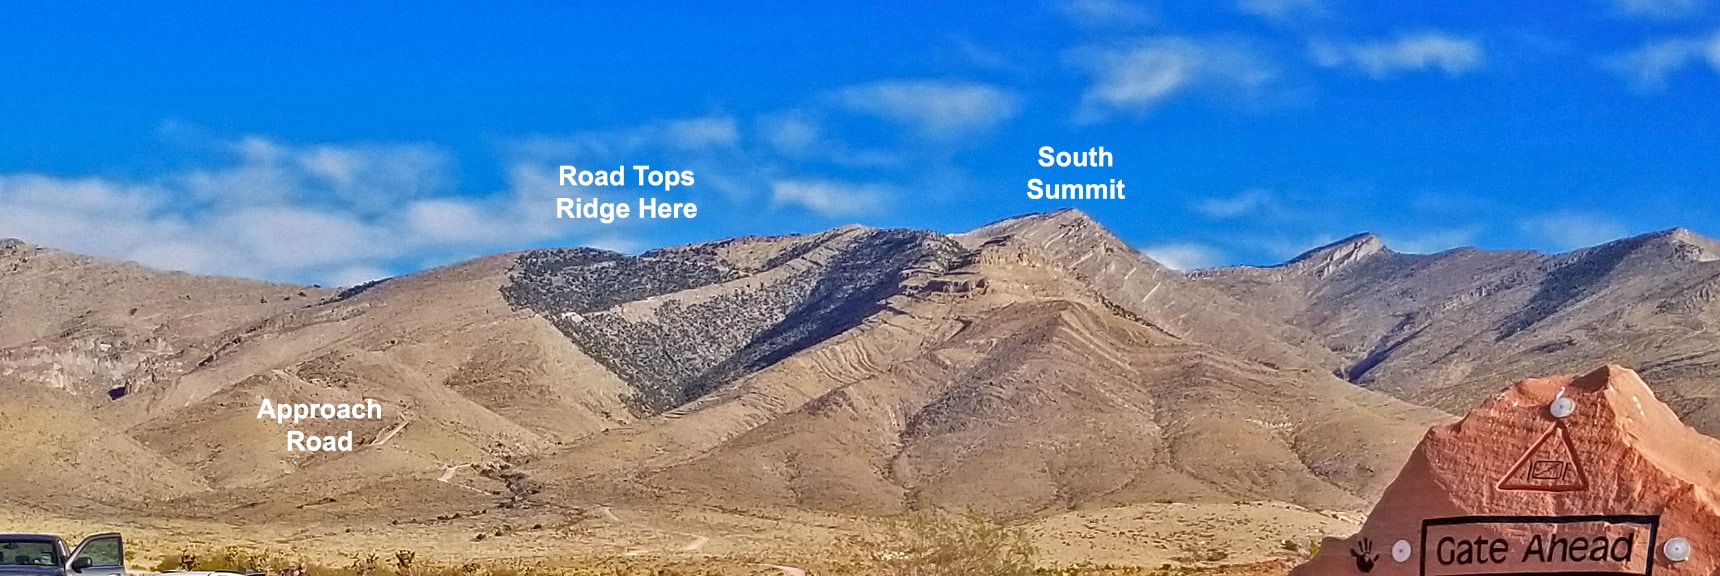 Potosi Mountain Road Ascending the Ridge. South Summit In View | Potosi Mountain Spring Mountains Nevada